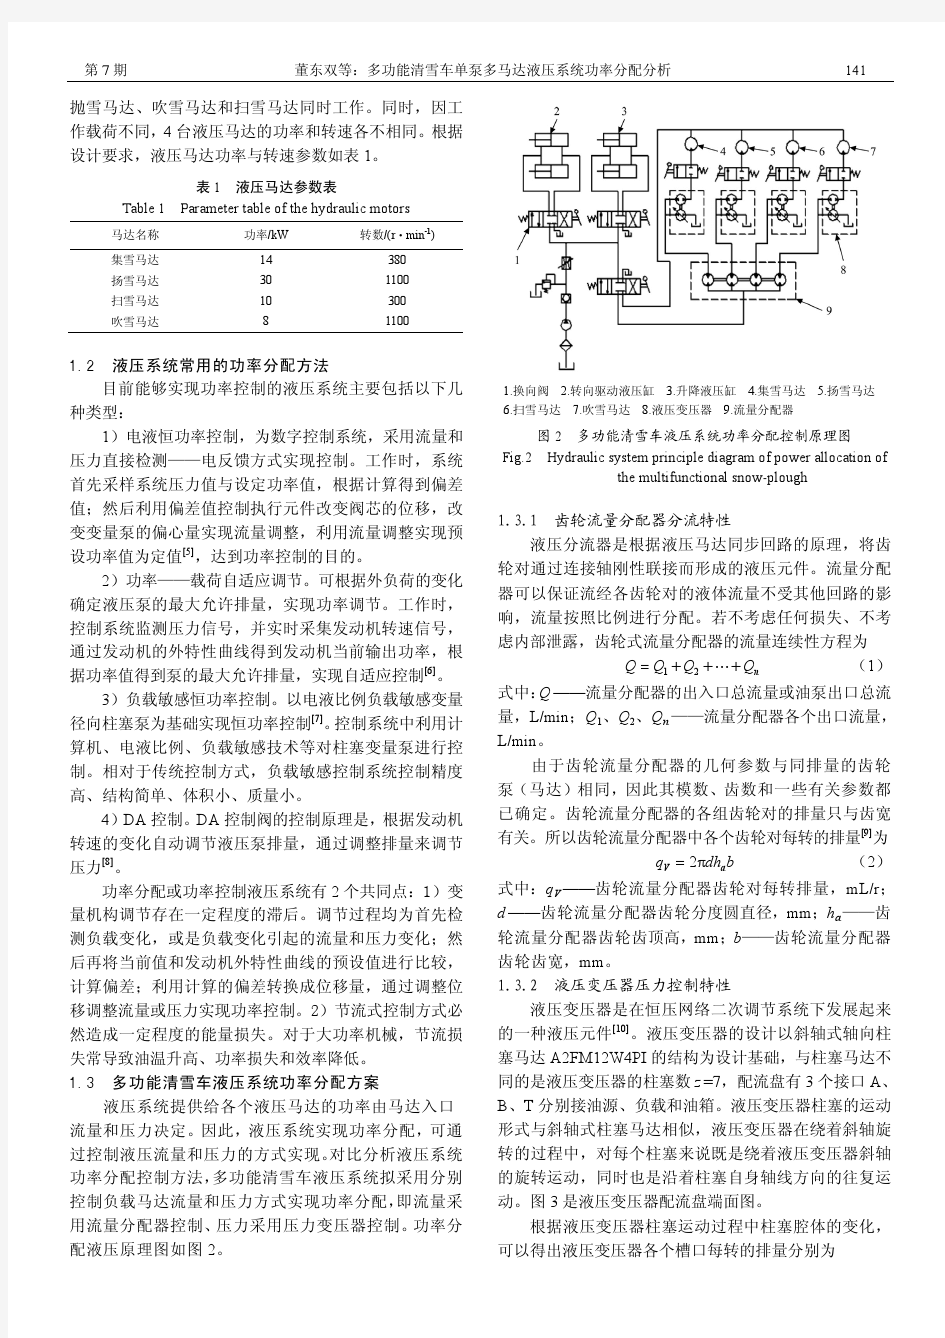 多功能清雪车单泵多马达液压系统功率分配分析 农业工程学报 2010 07